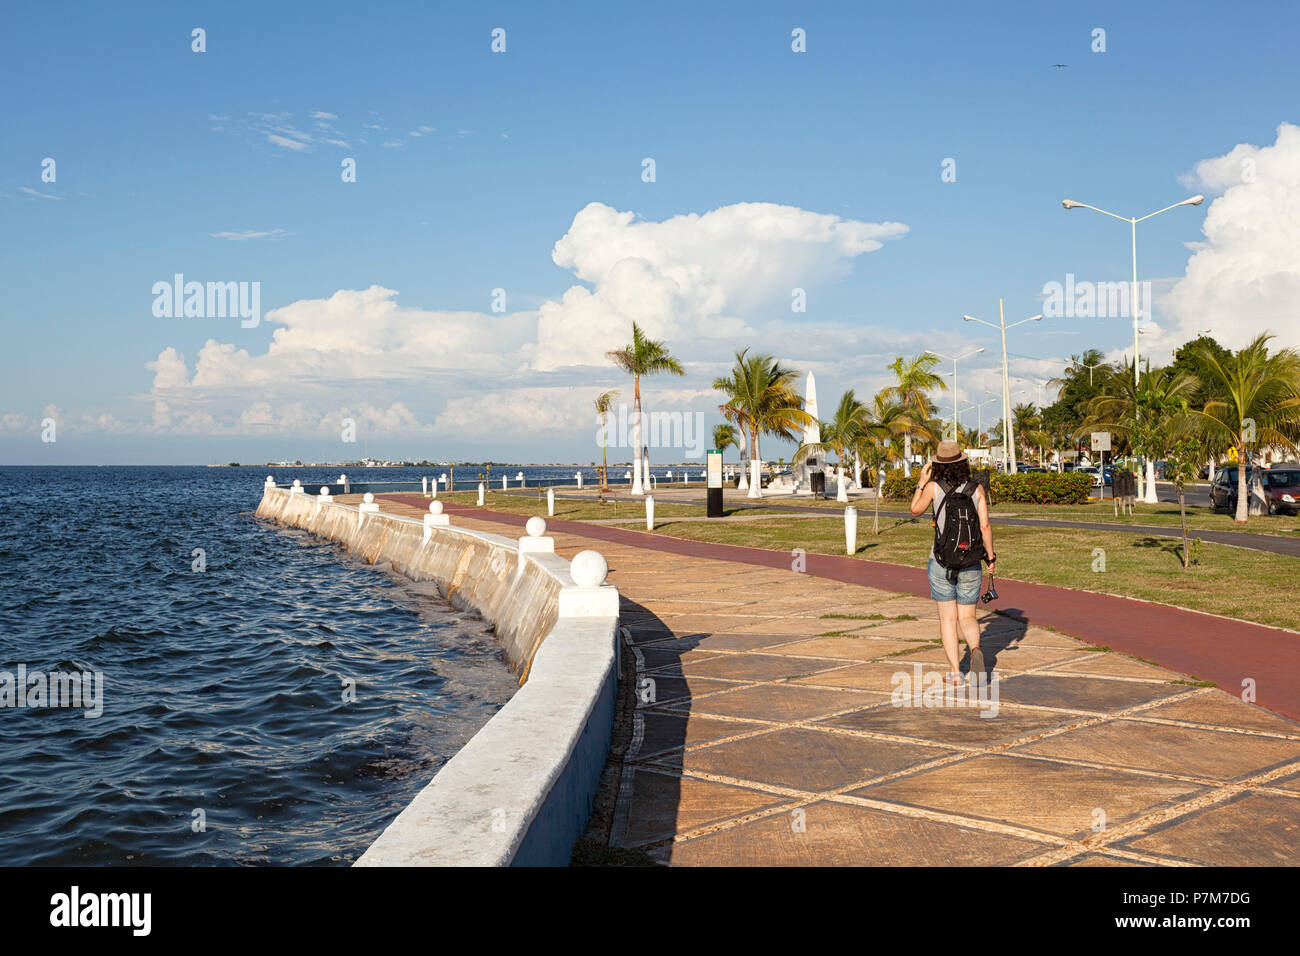 Un paseo turístico en Campeche promenade, San Francisco de Campeche, estado de Campeche, México. Foto de stock